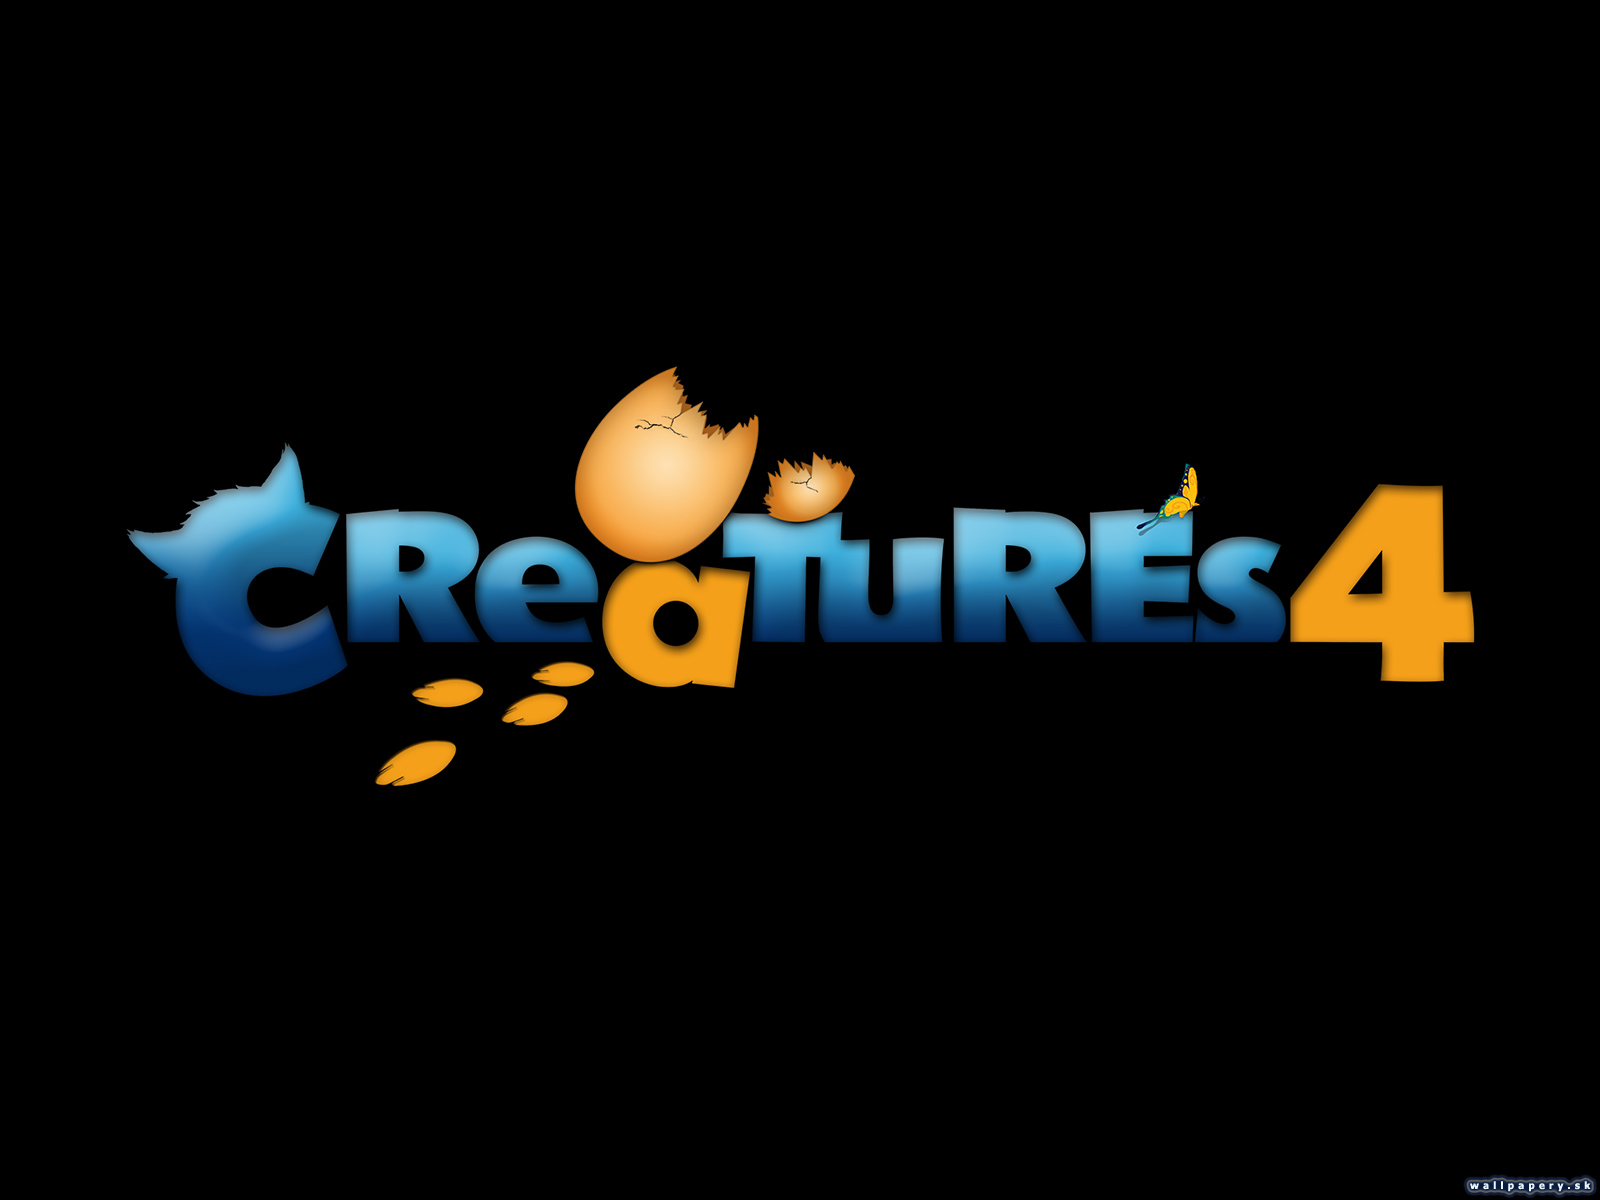 Creatures 4 - wallpaper 10